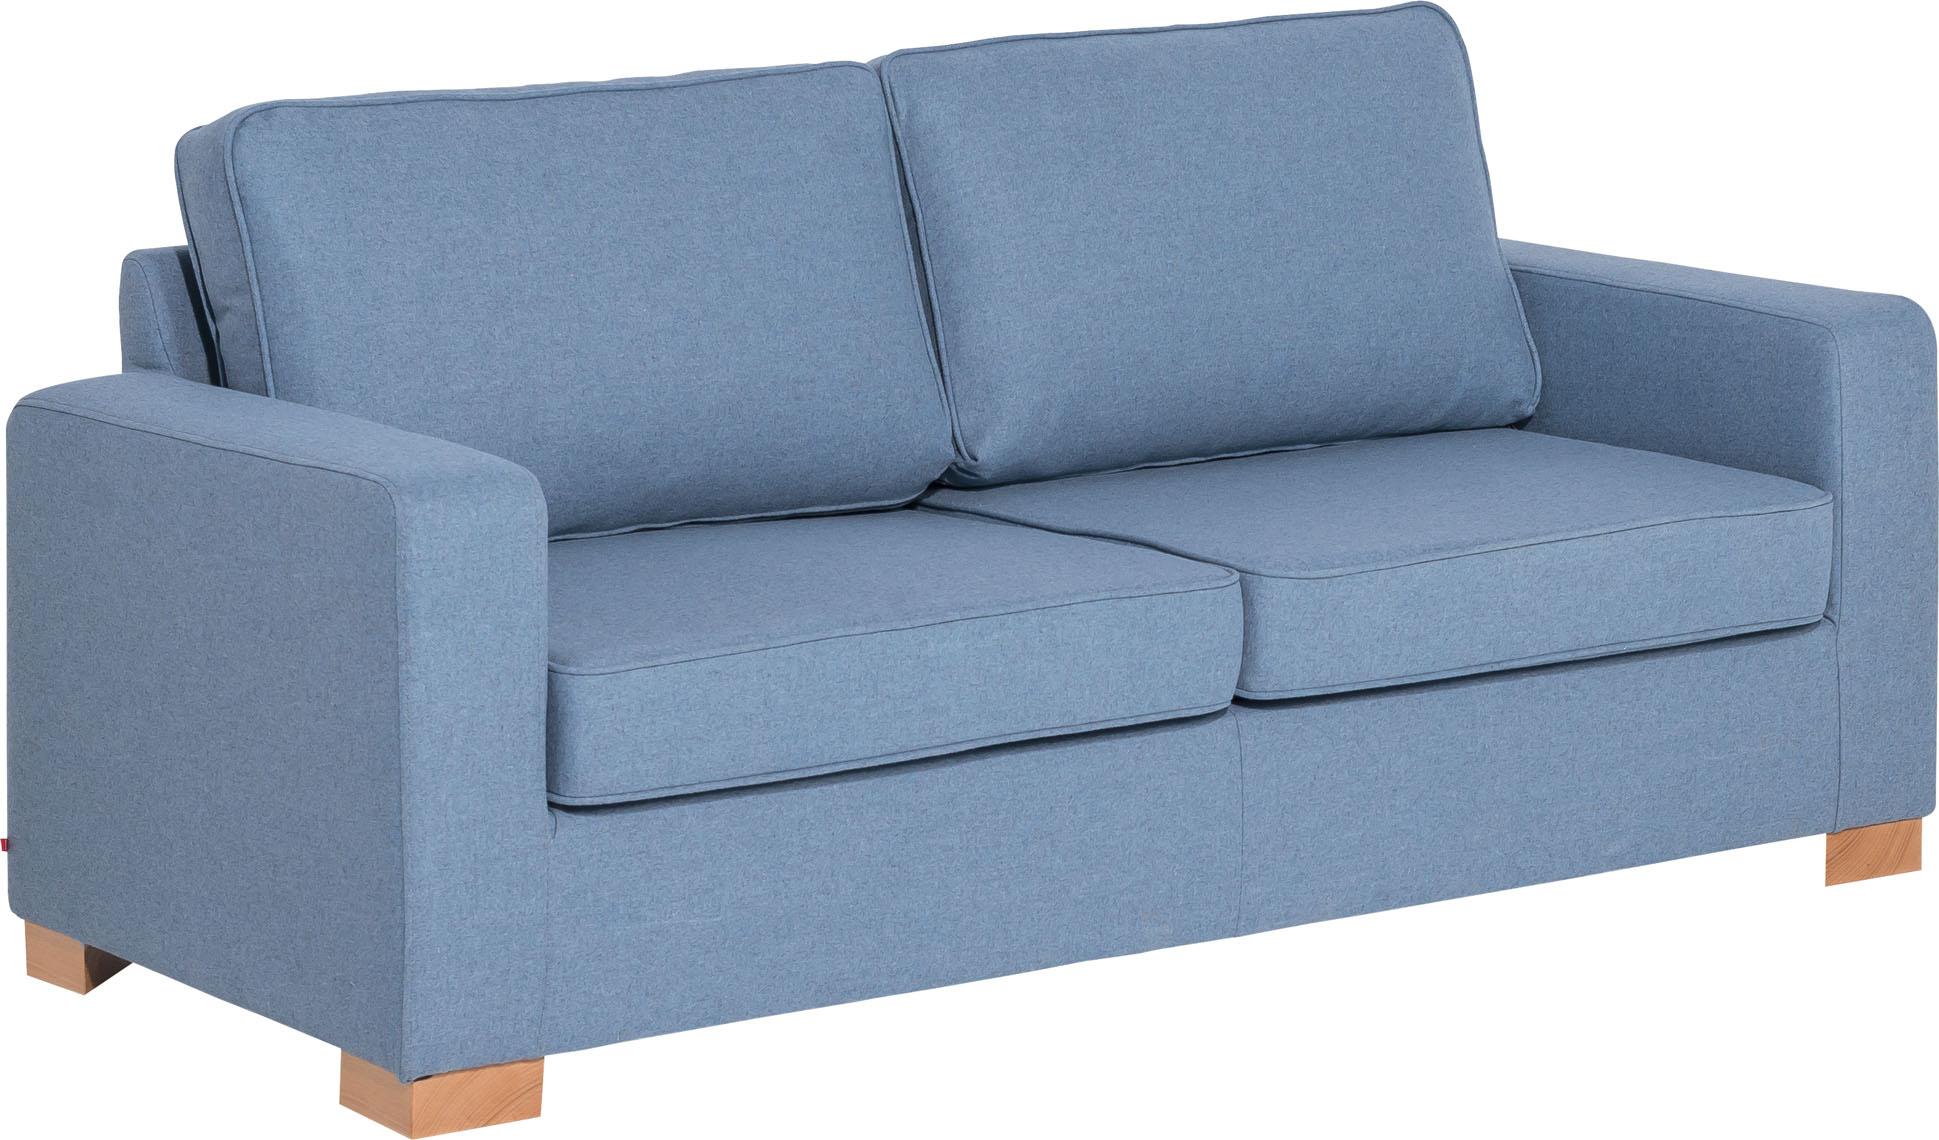 2,5-seat sofa Noel